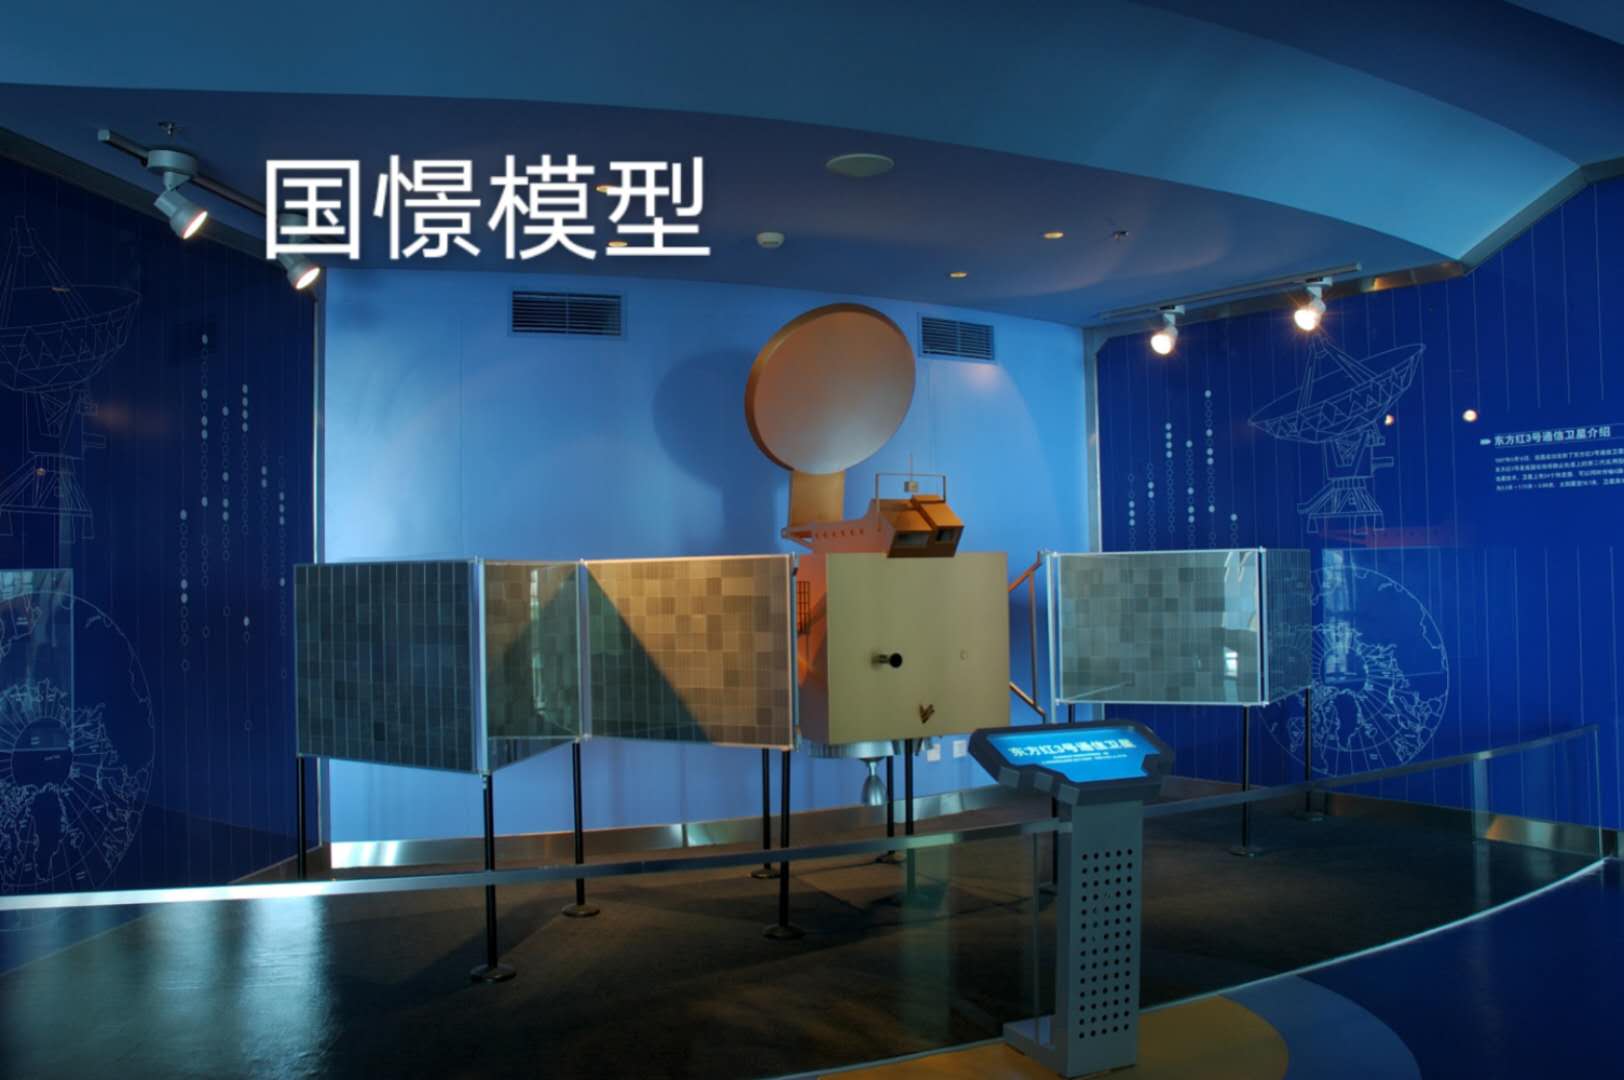 大竹县航天模型